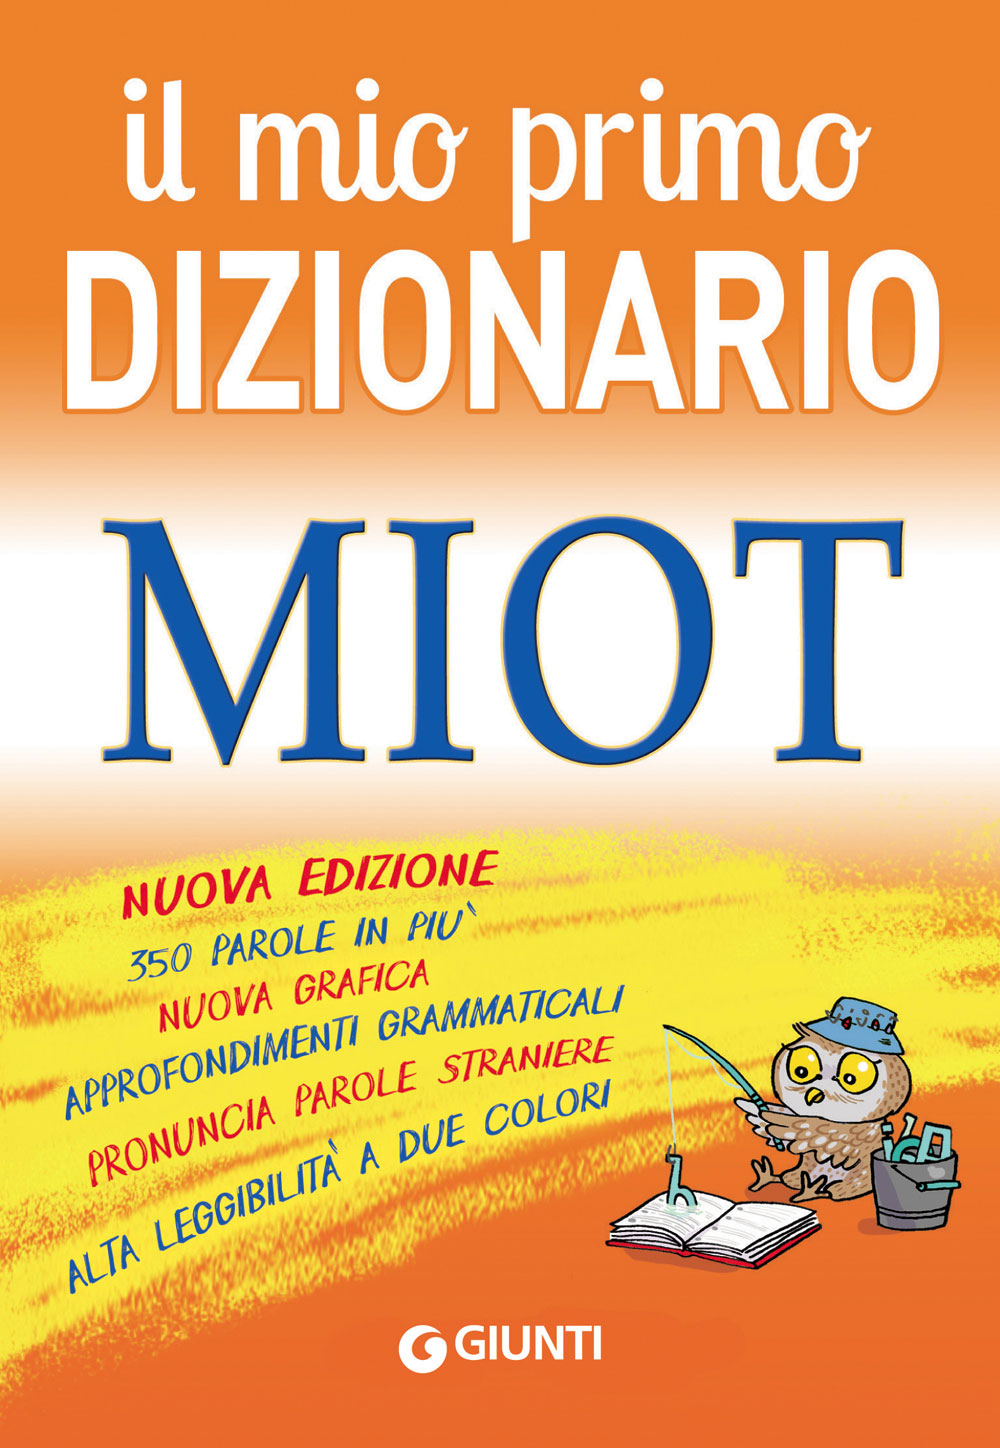 Il mio primo Dizionario MIOT::Nuova edizione, 350 parole in più, nuova grafica, approfondimenti grammaticali, pronuncia parole straniere, alta leggibilità a due colori